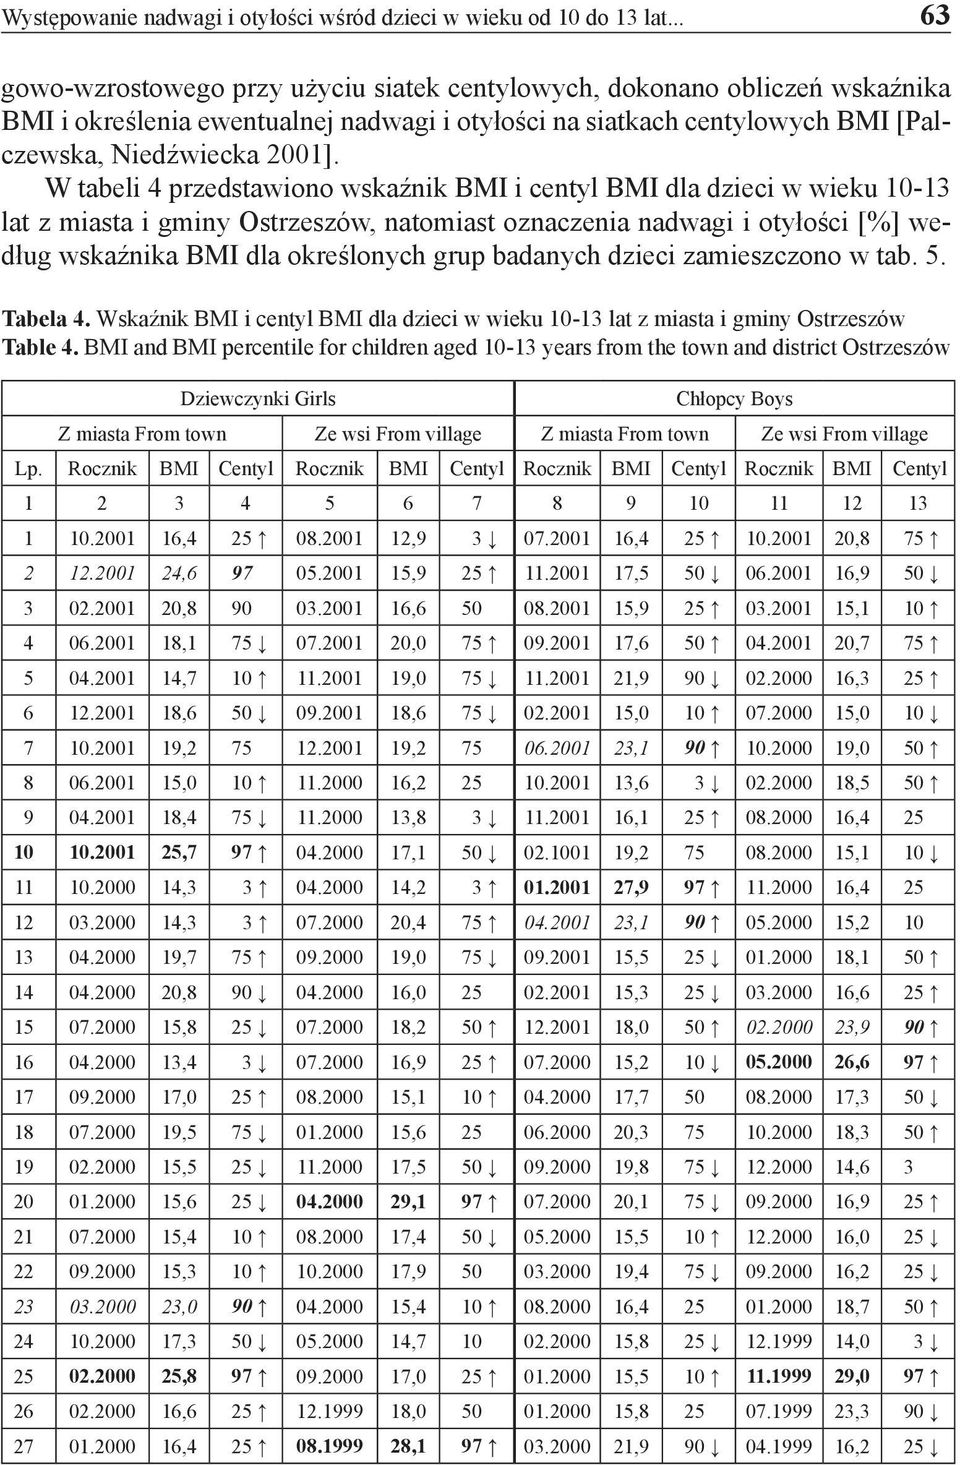 W tabeli 4 przedstawiono wskaźnik BMI i centyl BMI dla dzieci w wieku 10-13 lat z miasta i gminy Ostrzeszów, natomiast oznaczenia nadwagi i otyłości [%] według wskaźnika BMI dla określonych grup